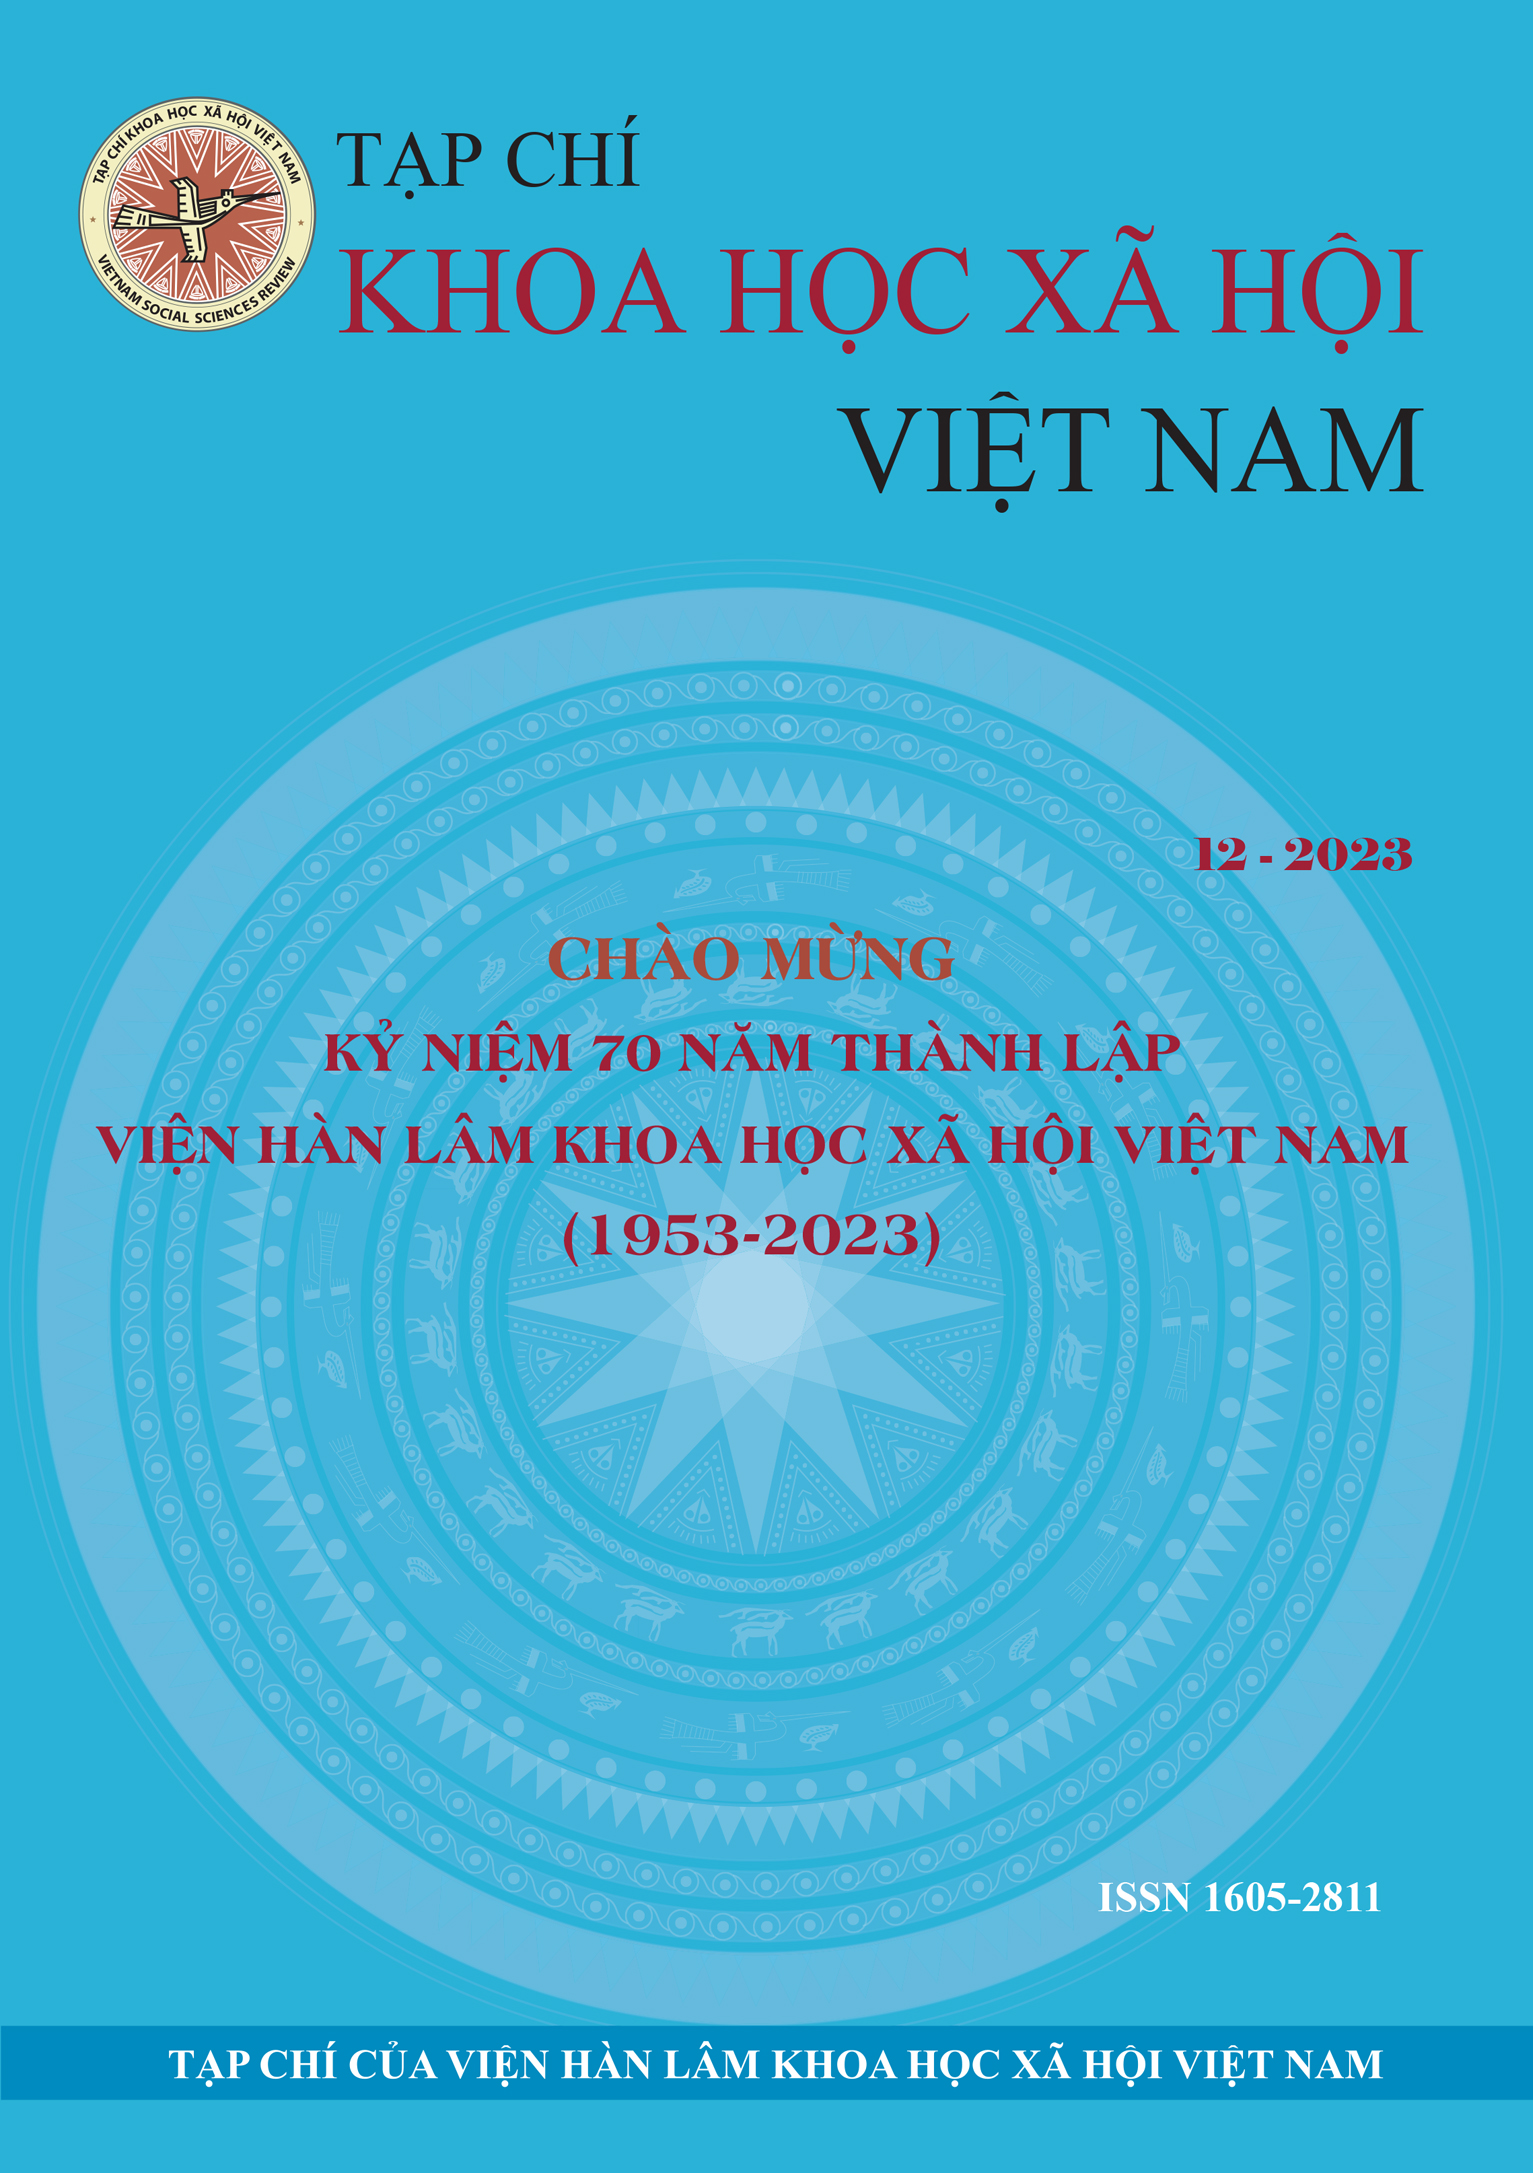 Tạp chí Khoa học xã hội Việt Nam. Số 12 - 2023 